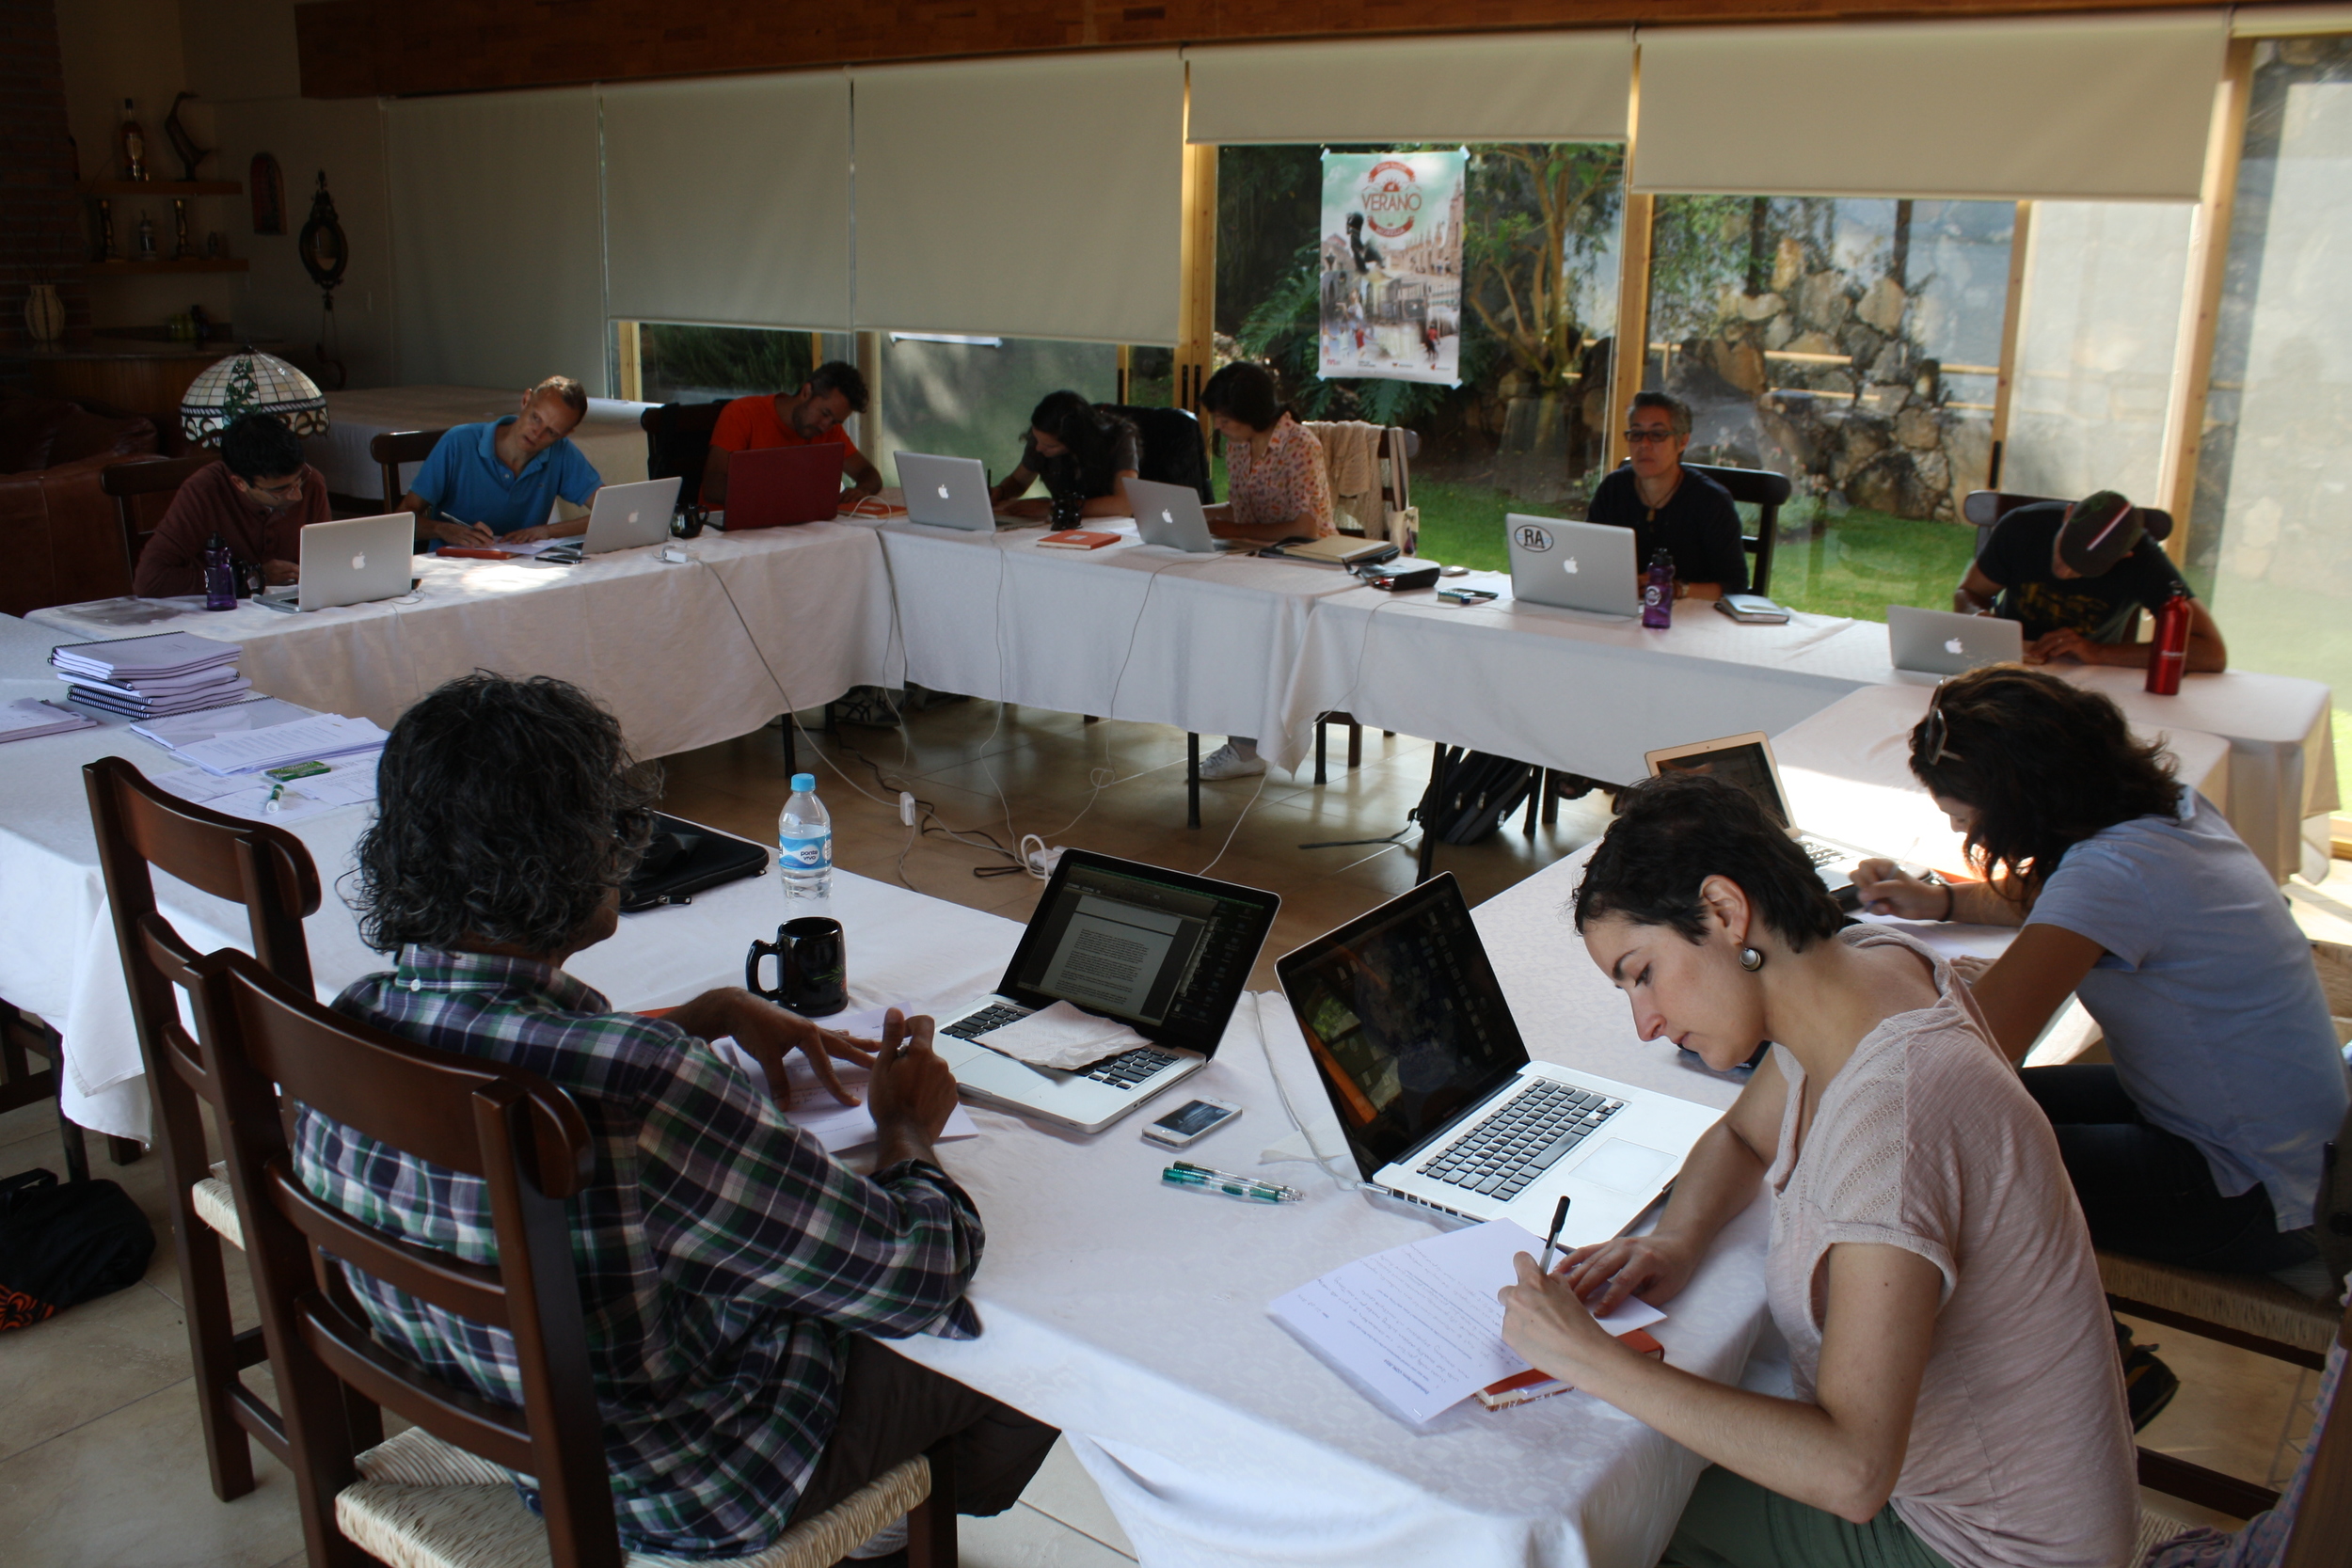  Cine Qua Non Lab Fellows at work in Morelia, México. 